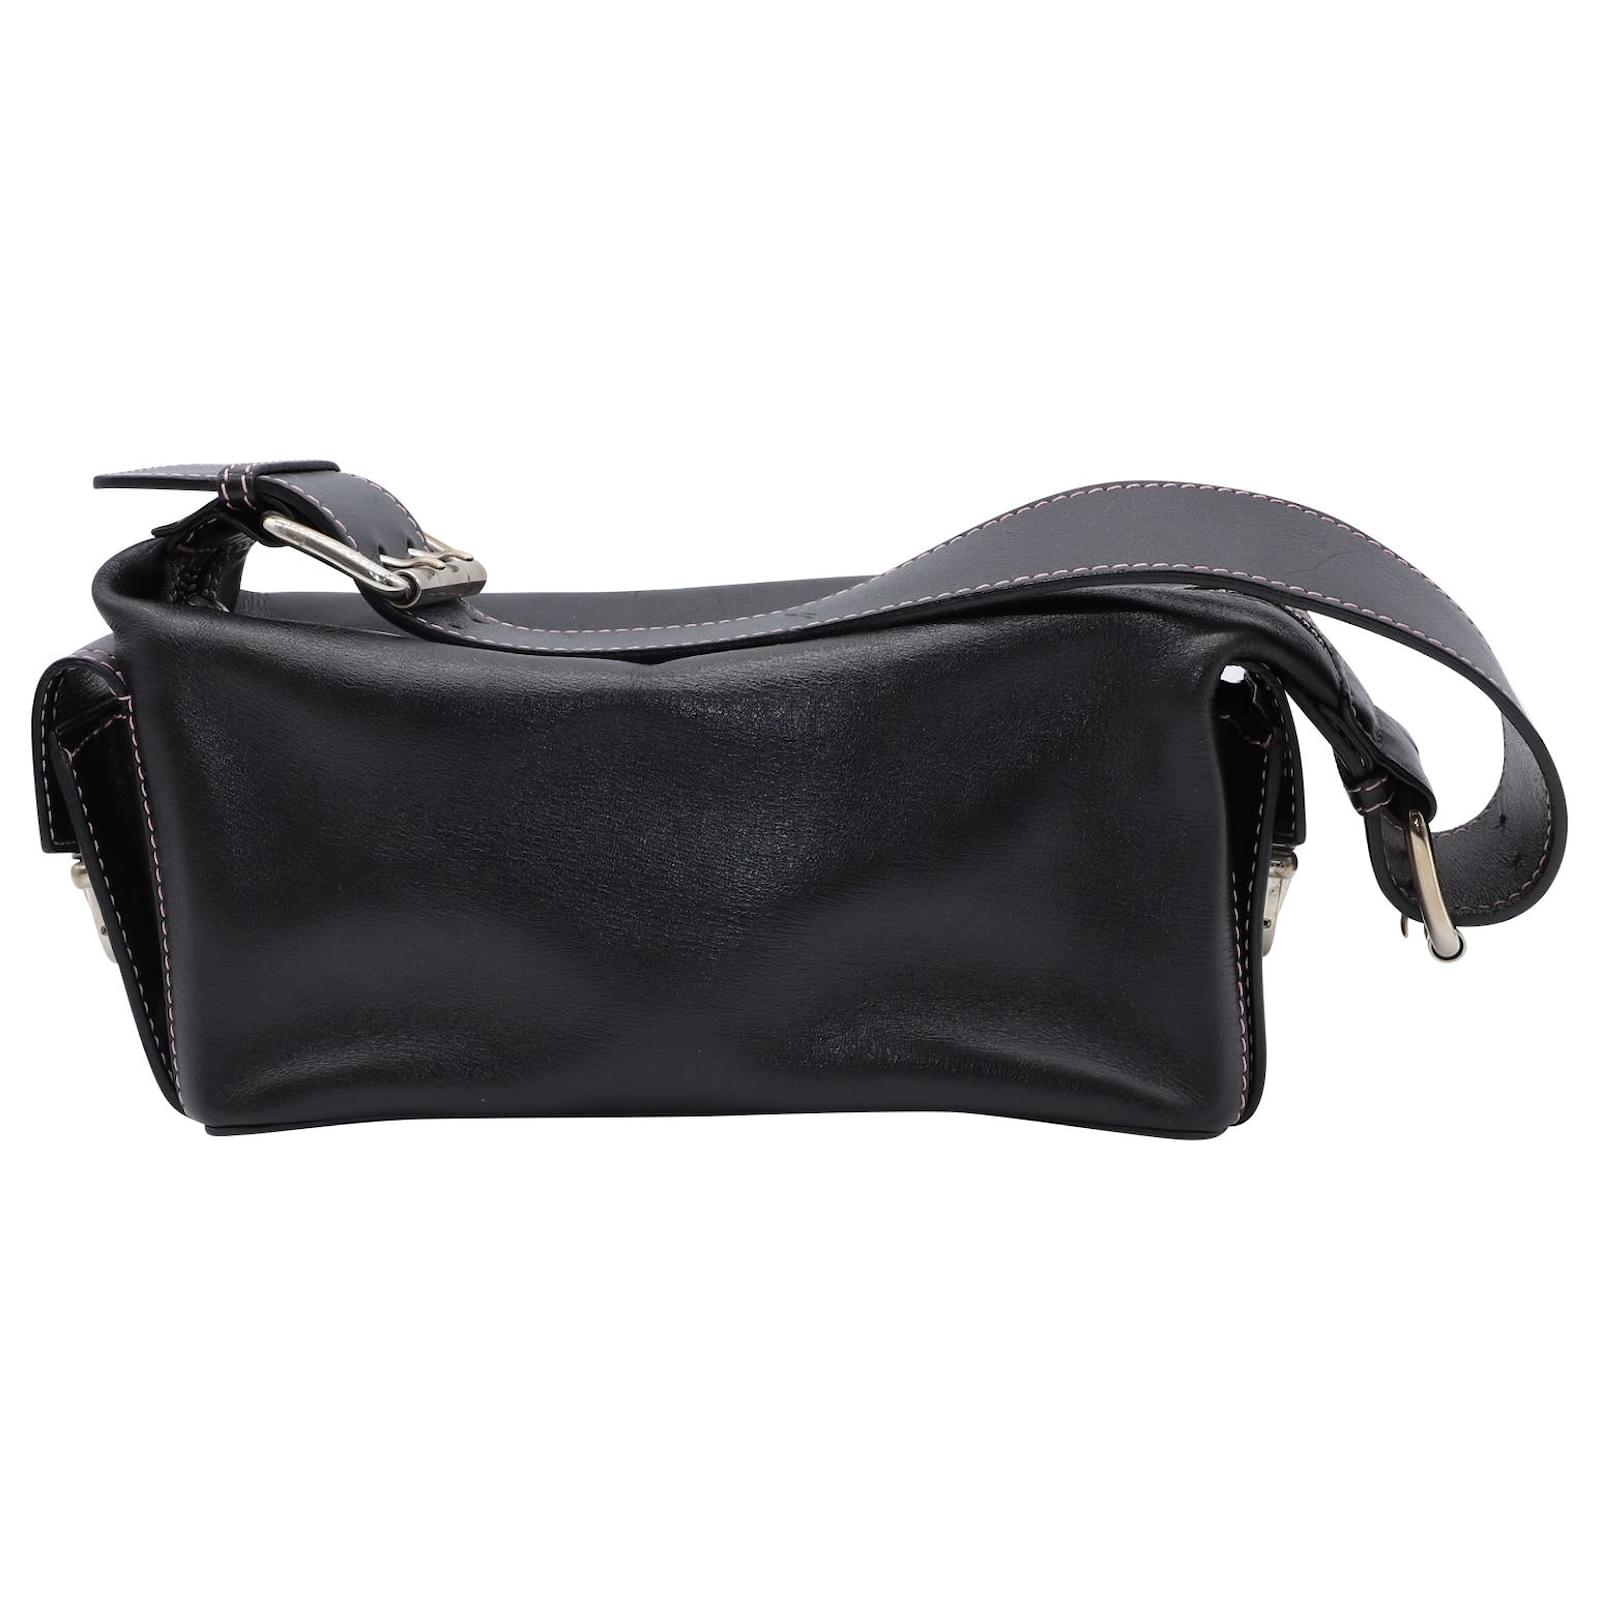 Marc Jacobs Women's Shoulder Bags - Black